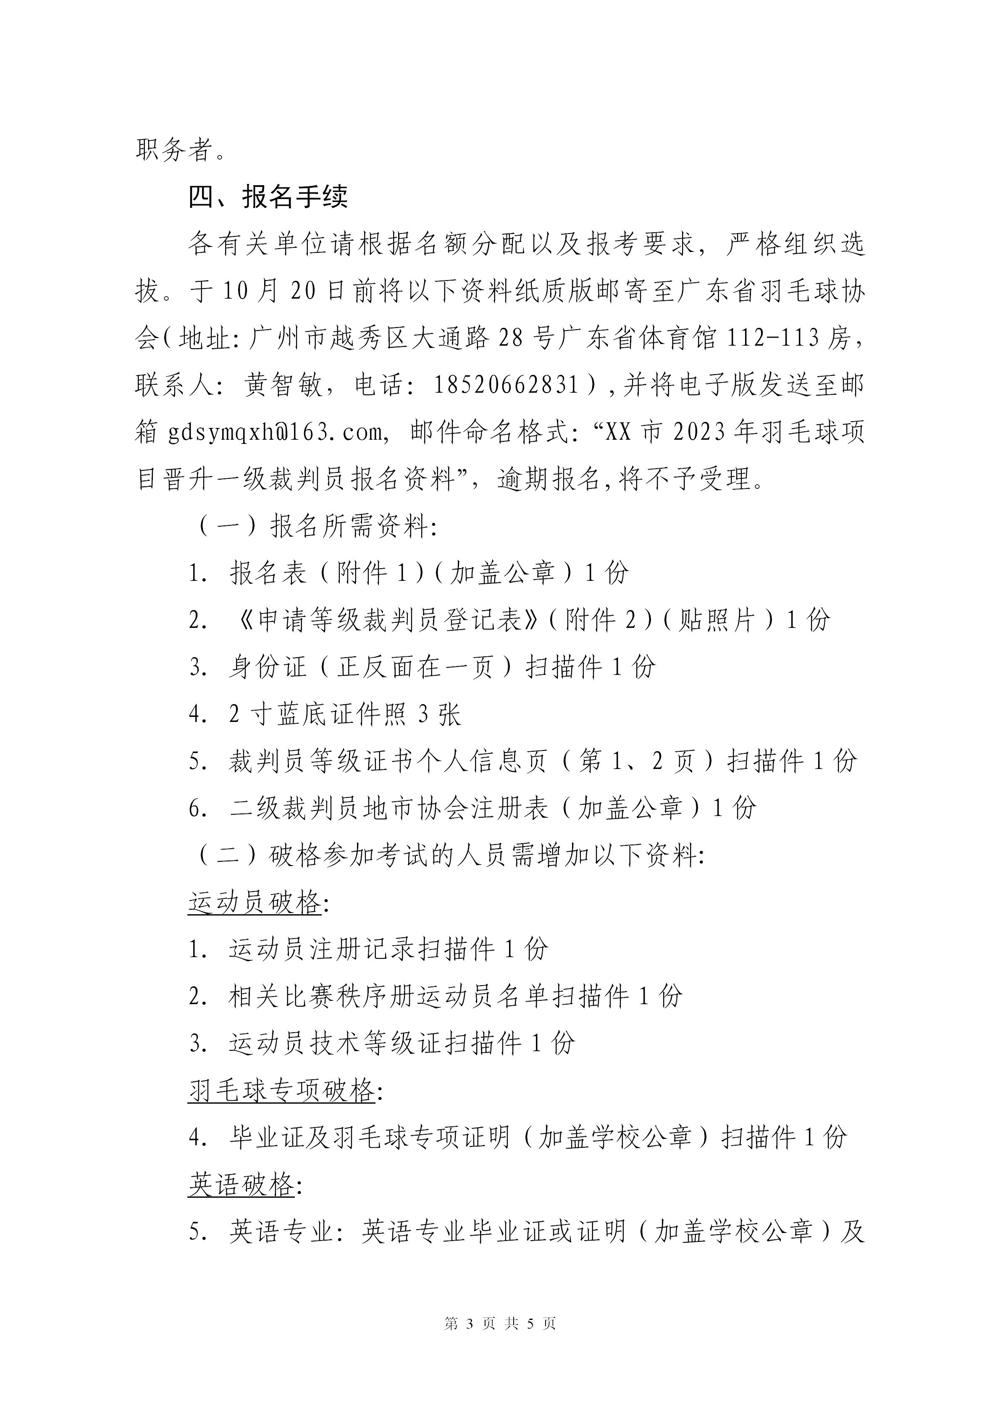 关于2023年广东省羽毛球项目晋升一级裁判员的通知(2)_03